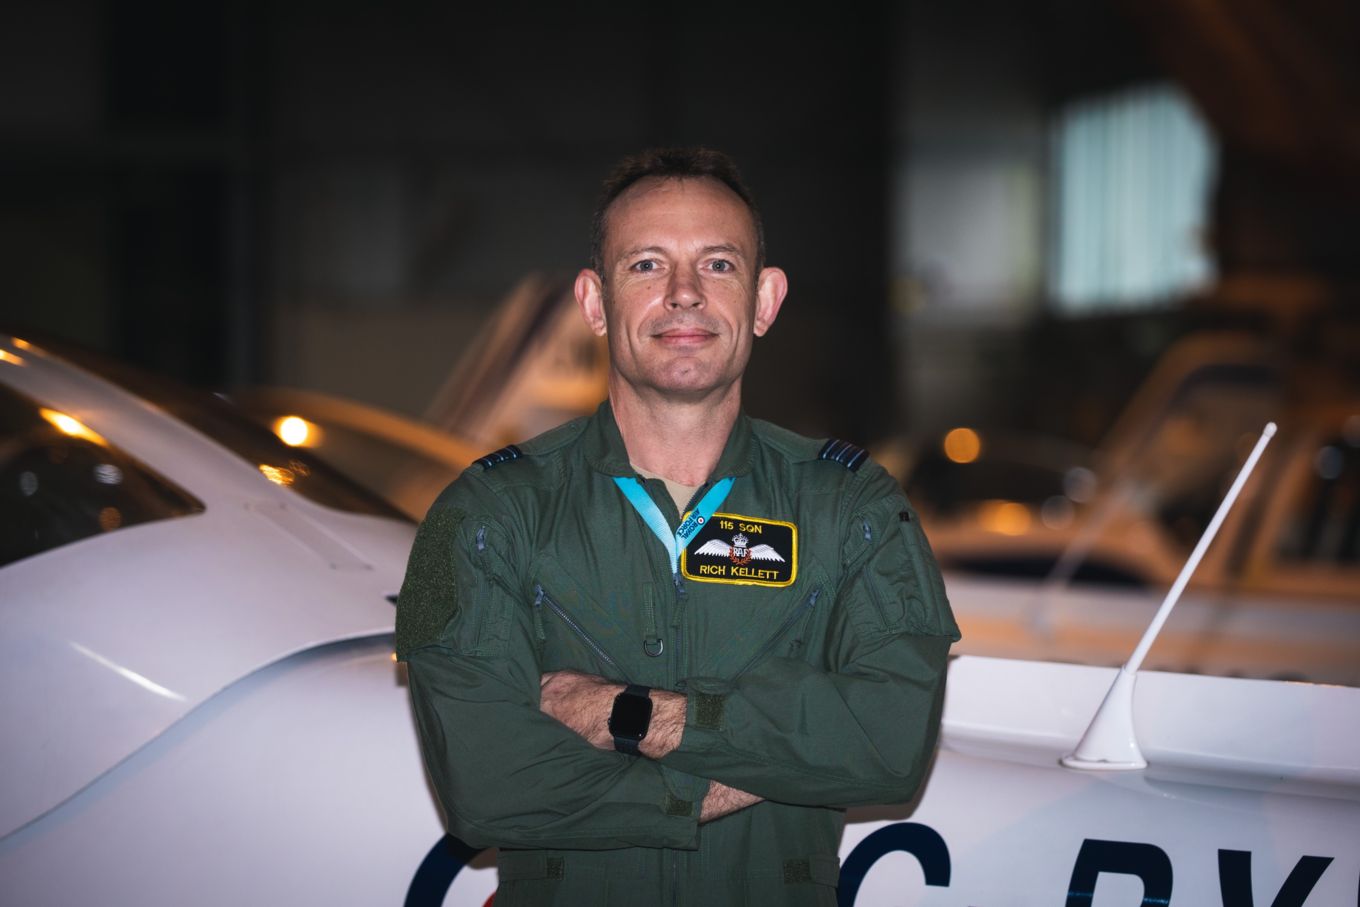 Squadron Leader Rich Kellett at RAF Wittering